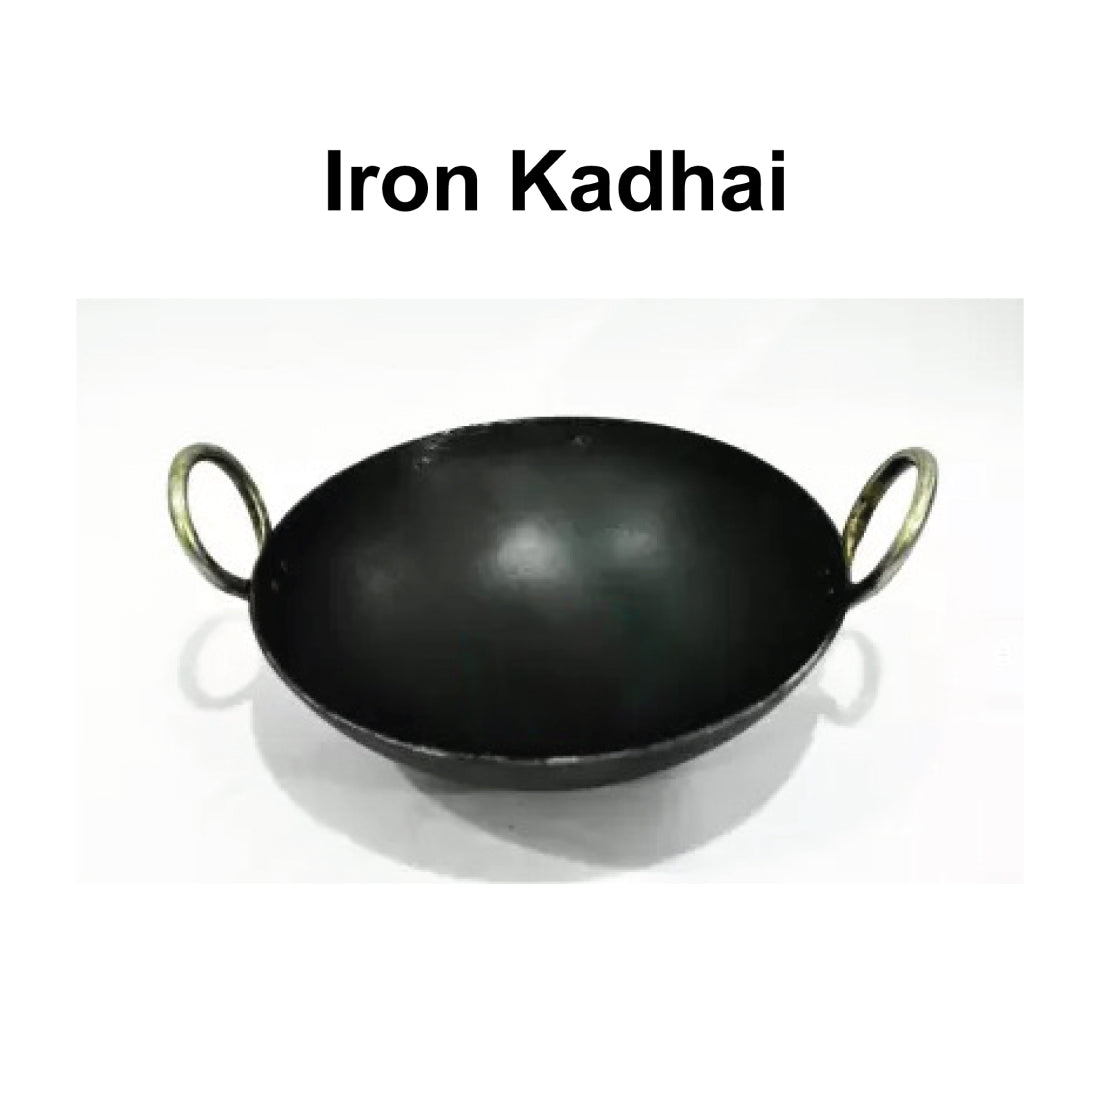 Iron Kadhai